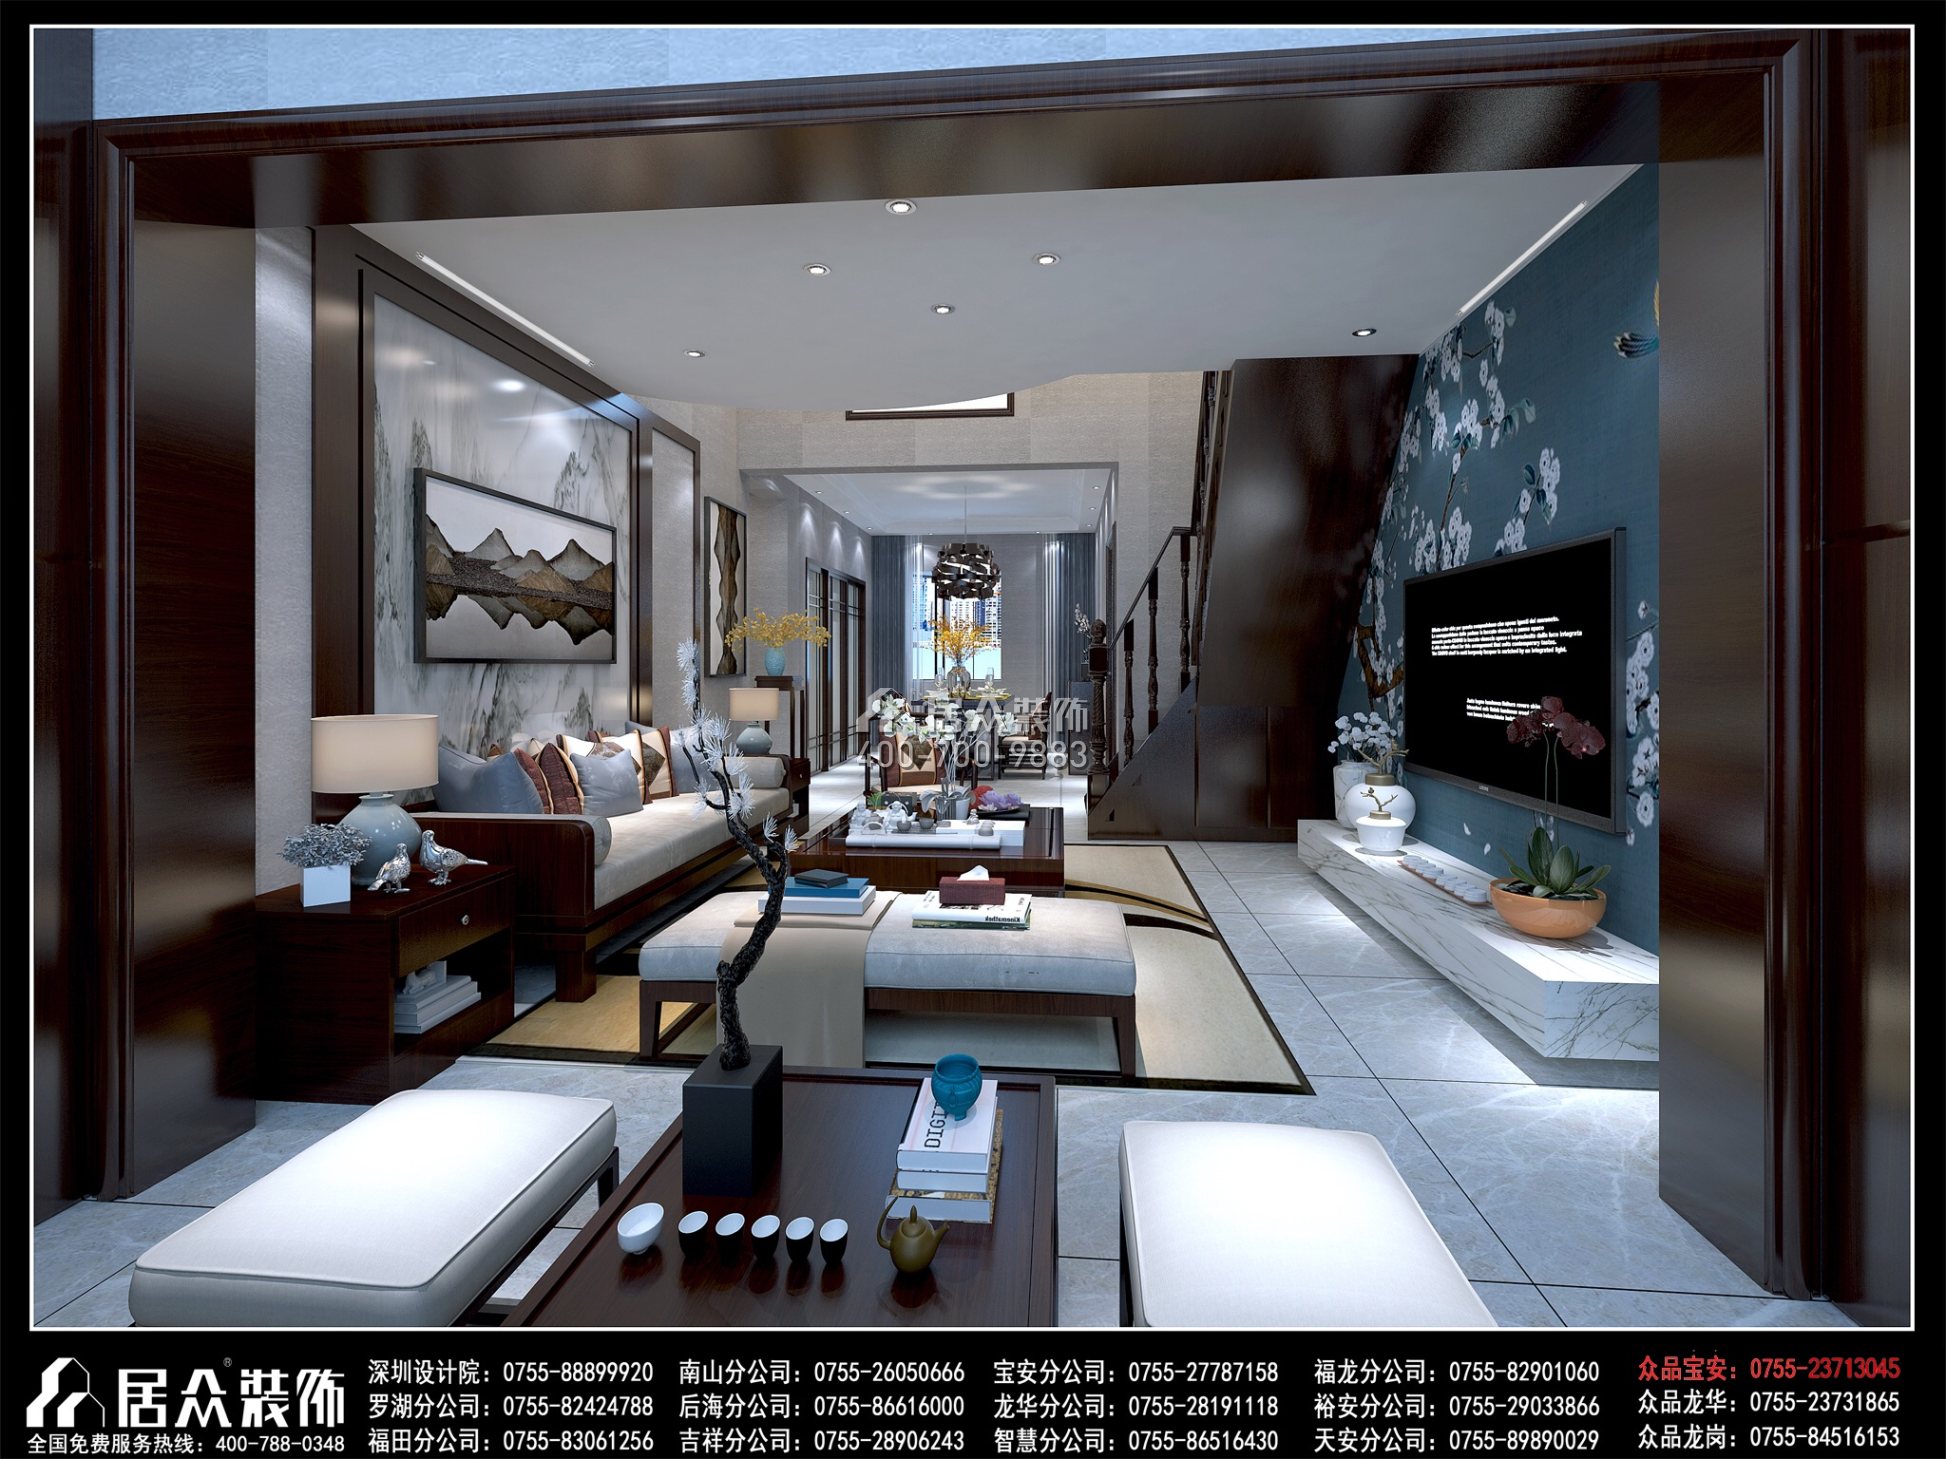 锦河苑208平方米中式风格复式户型客厅装修效果图